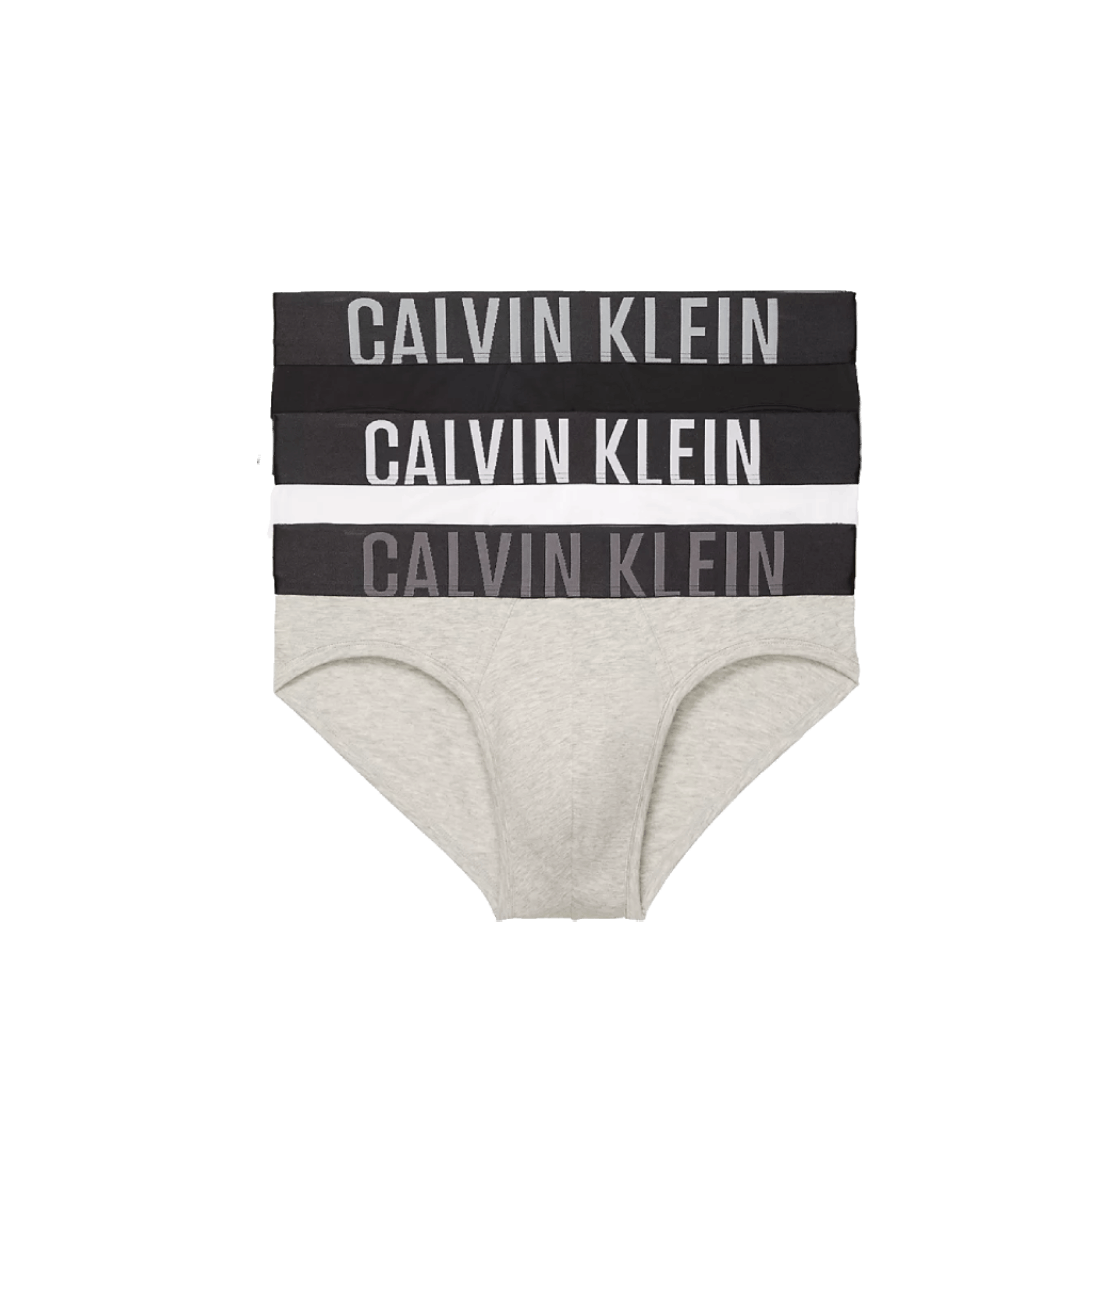 Tam Giác Calvin Klein 68